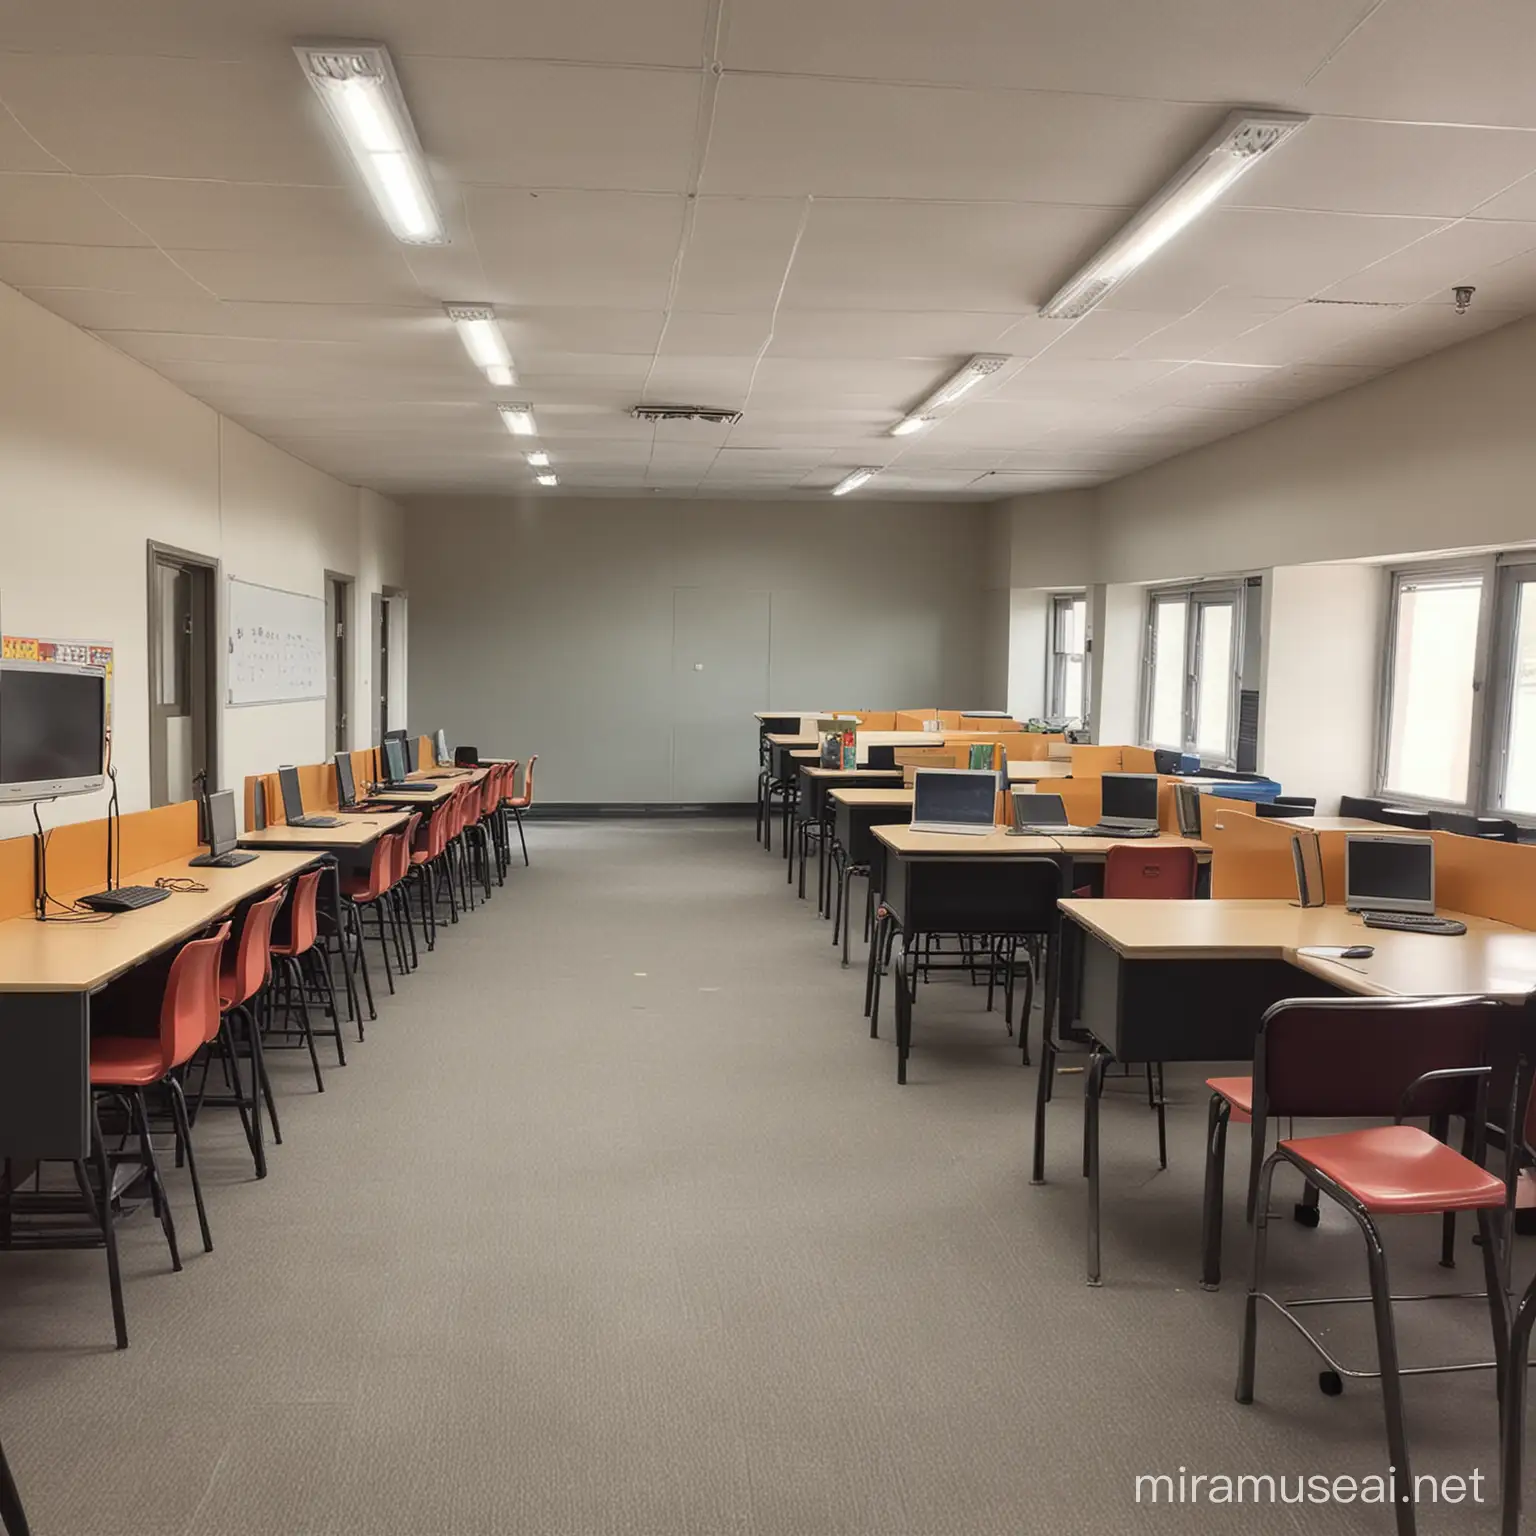 Modern computer rooms in school